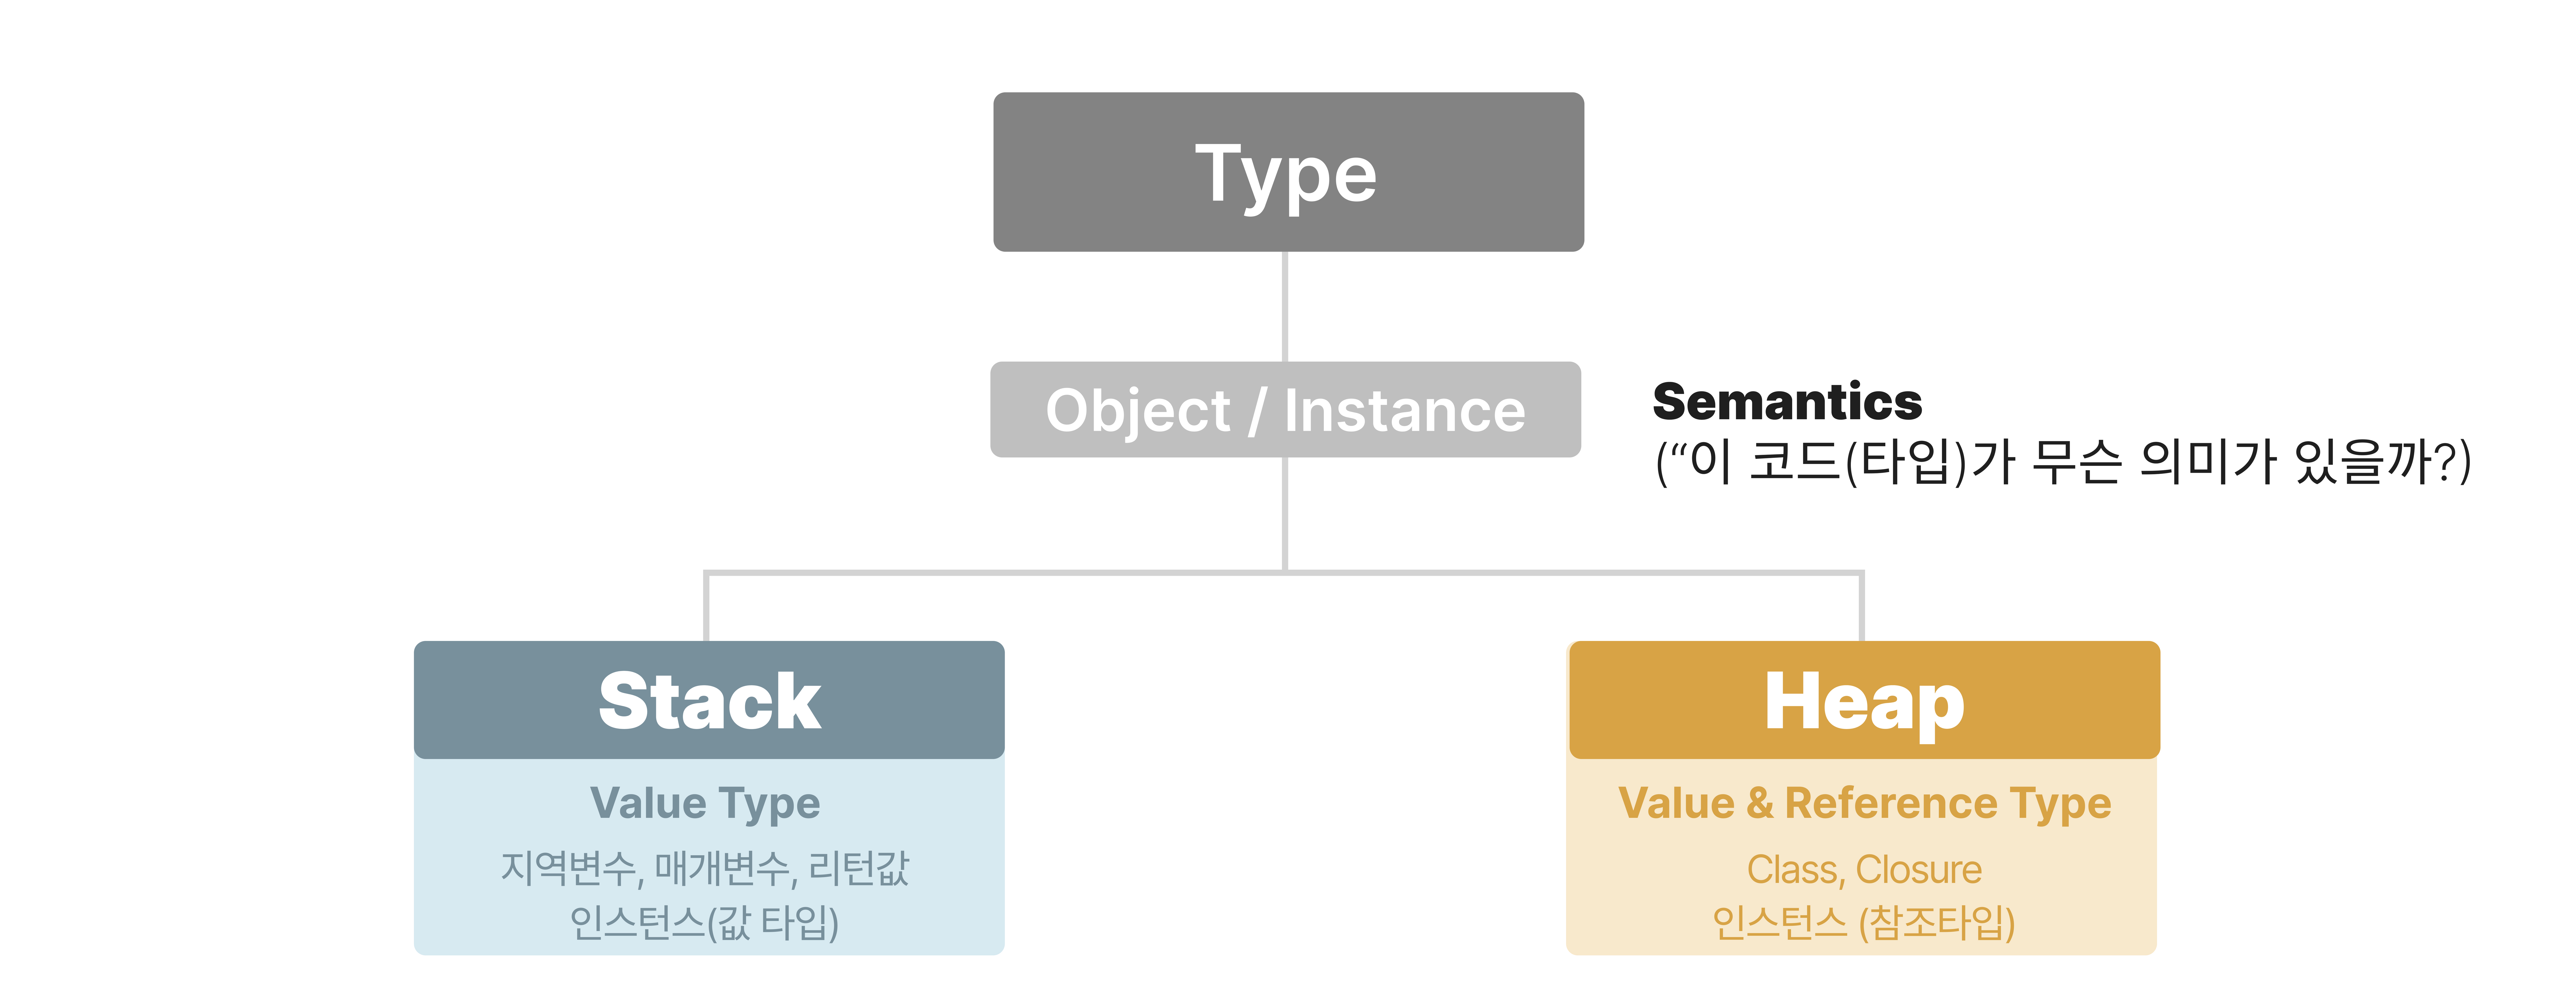 Stack과 Heap의 저장하는 기준은 타입(Type)에 따른 데이터의 의미(semantics)이다.